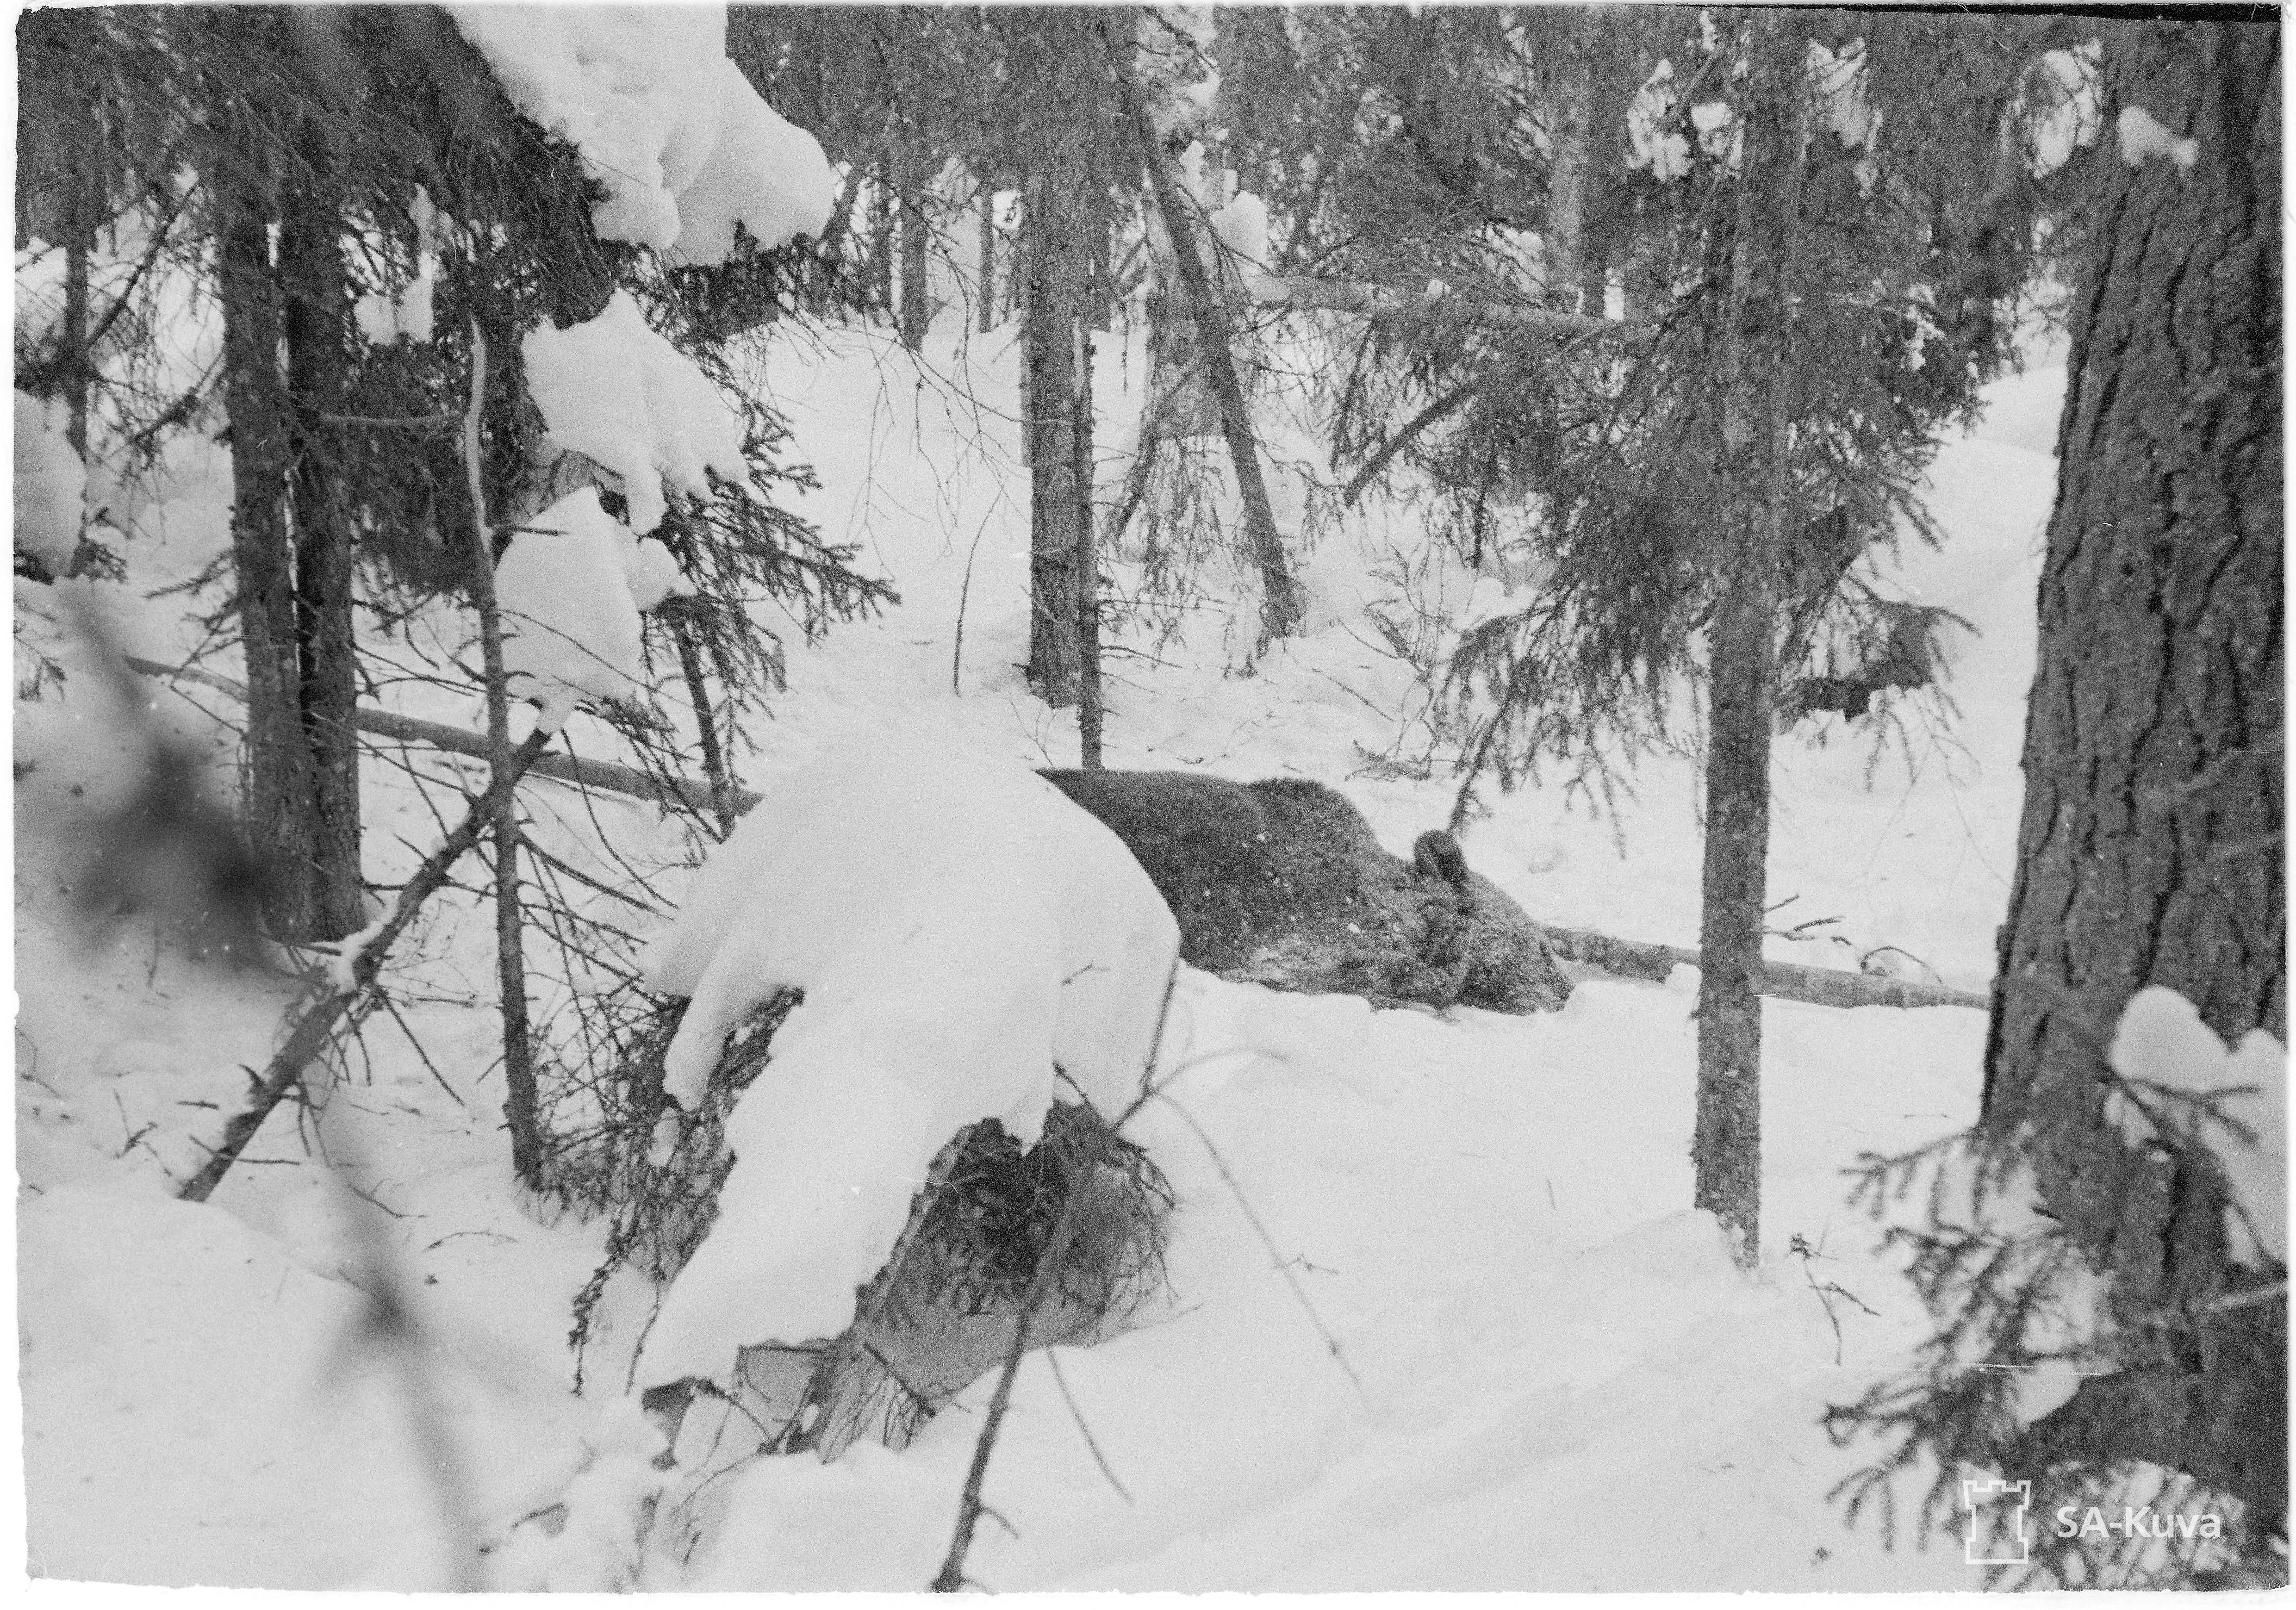 Chasse a l'ours au M39 en Finlande (le 31 Mars 1944) Sakuva_lg_144843